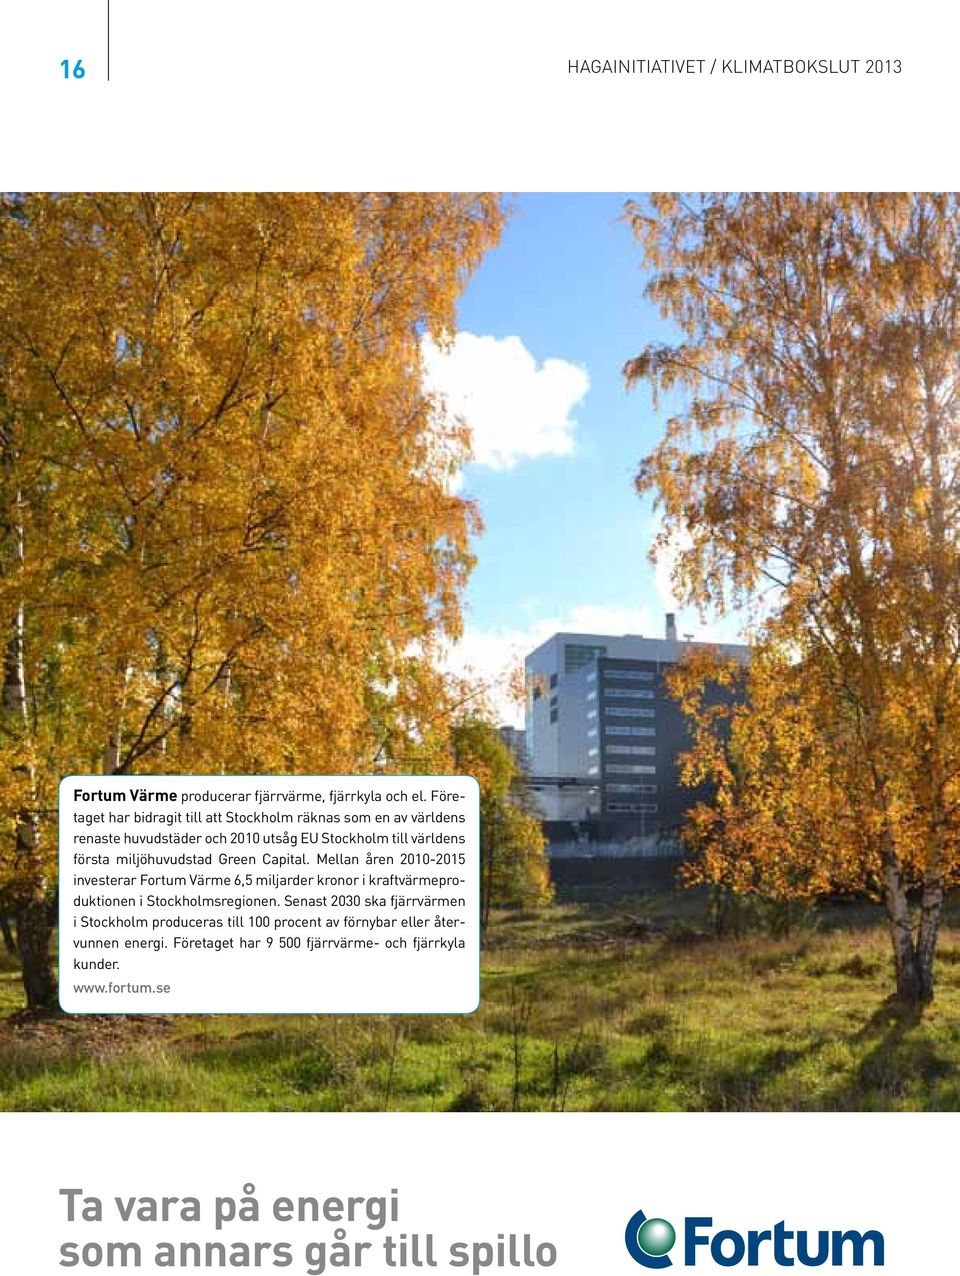 miljöhuvudstad Green Capital. Mellan åren 21-215 investerar Fortum Värme 6,5 miljarder kronor i kraftvärmeproduktionen i Stockholmsregionen.